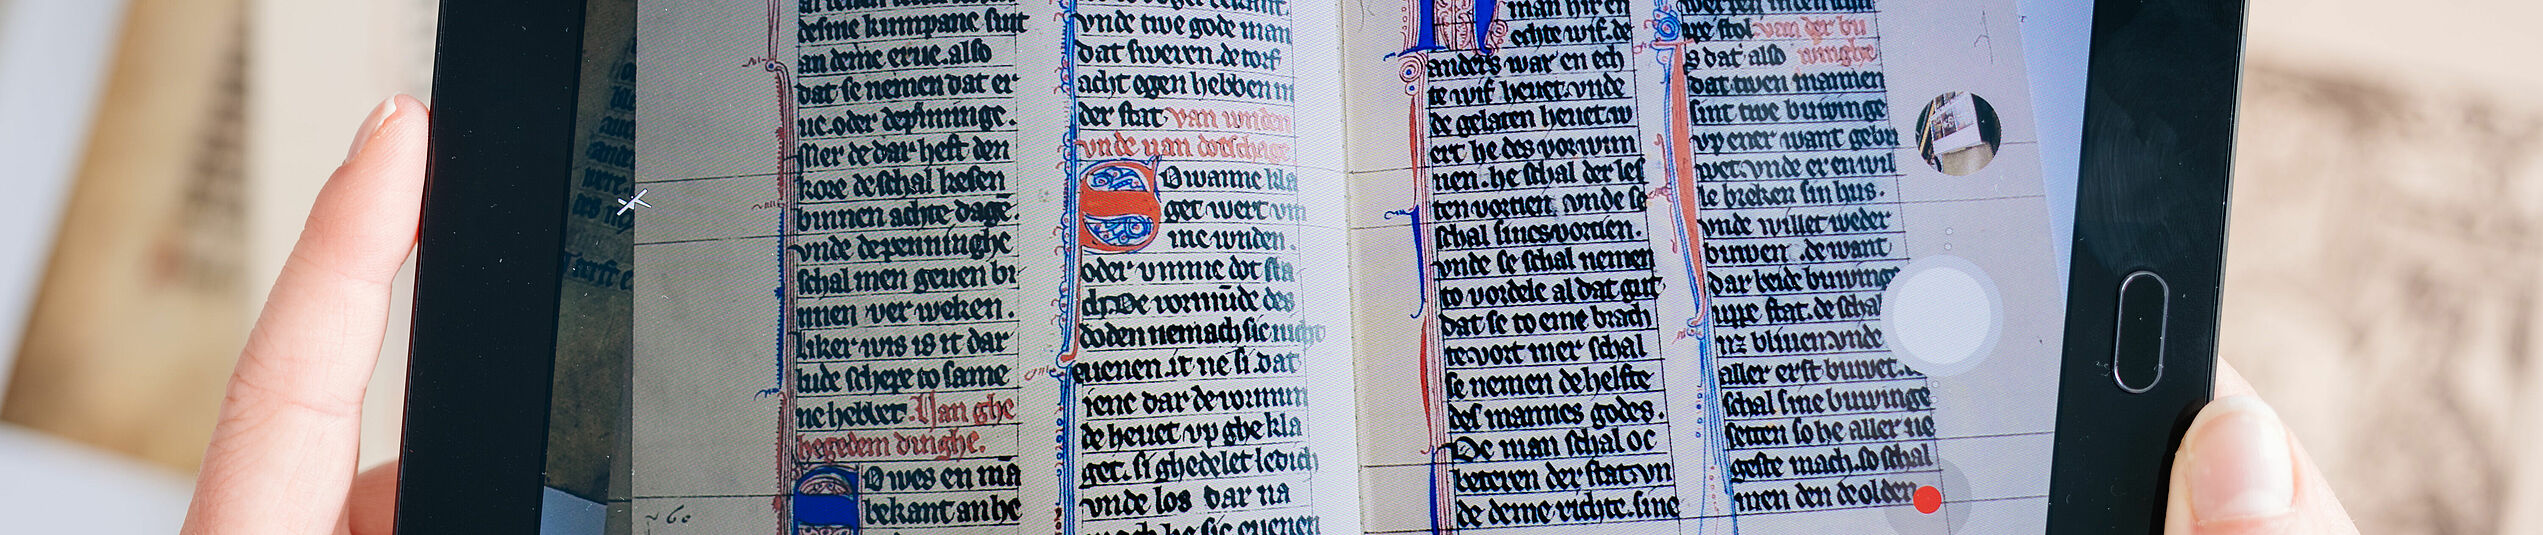 Auf einem beidhändig gehaltenen Tablet wird ein Buch mit mittelalterliche Schrift angezeigt